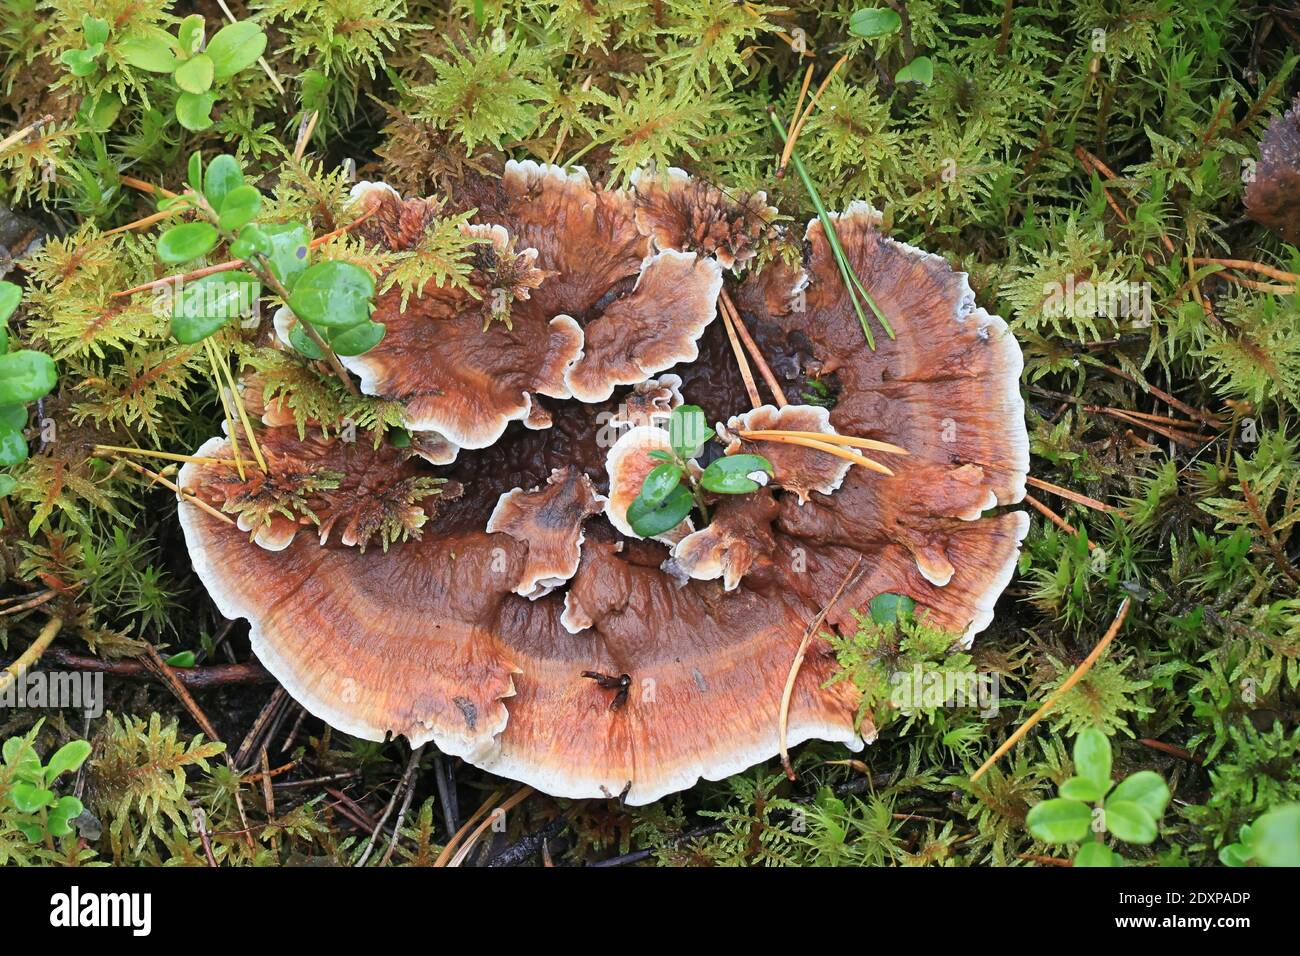 Hydnellum aurantiacum, connu sous le nom de colonne orange ou Hydnellum orange, champignon dentaire sauvage de Finlande Banque D'Images